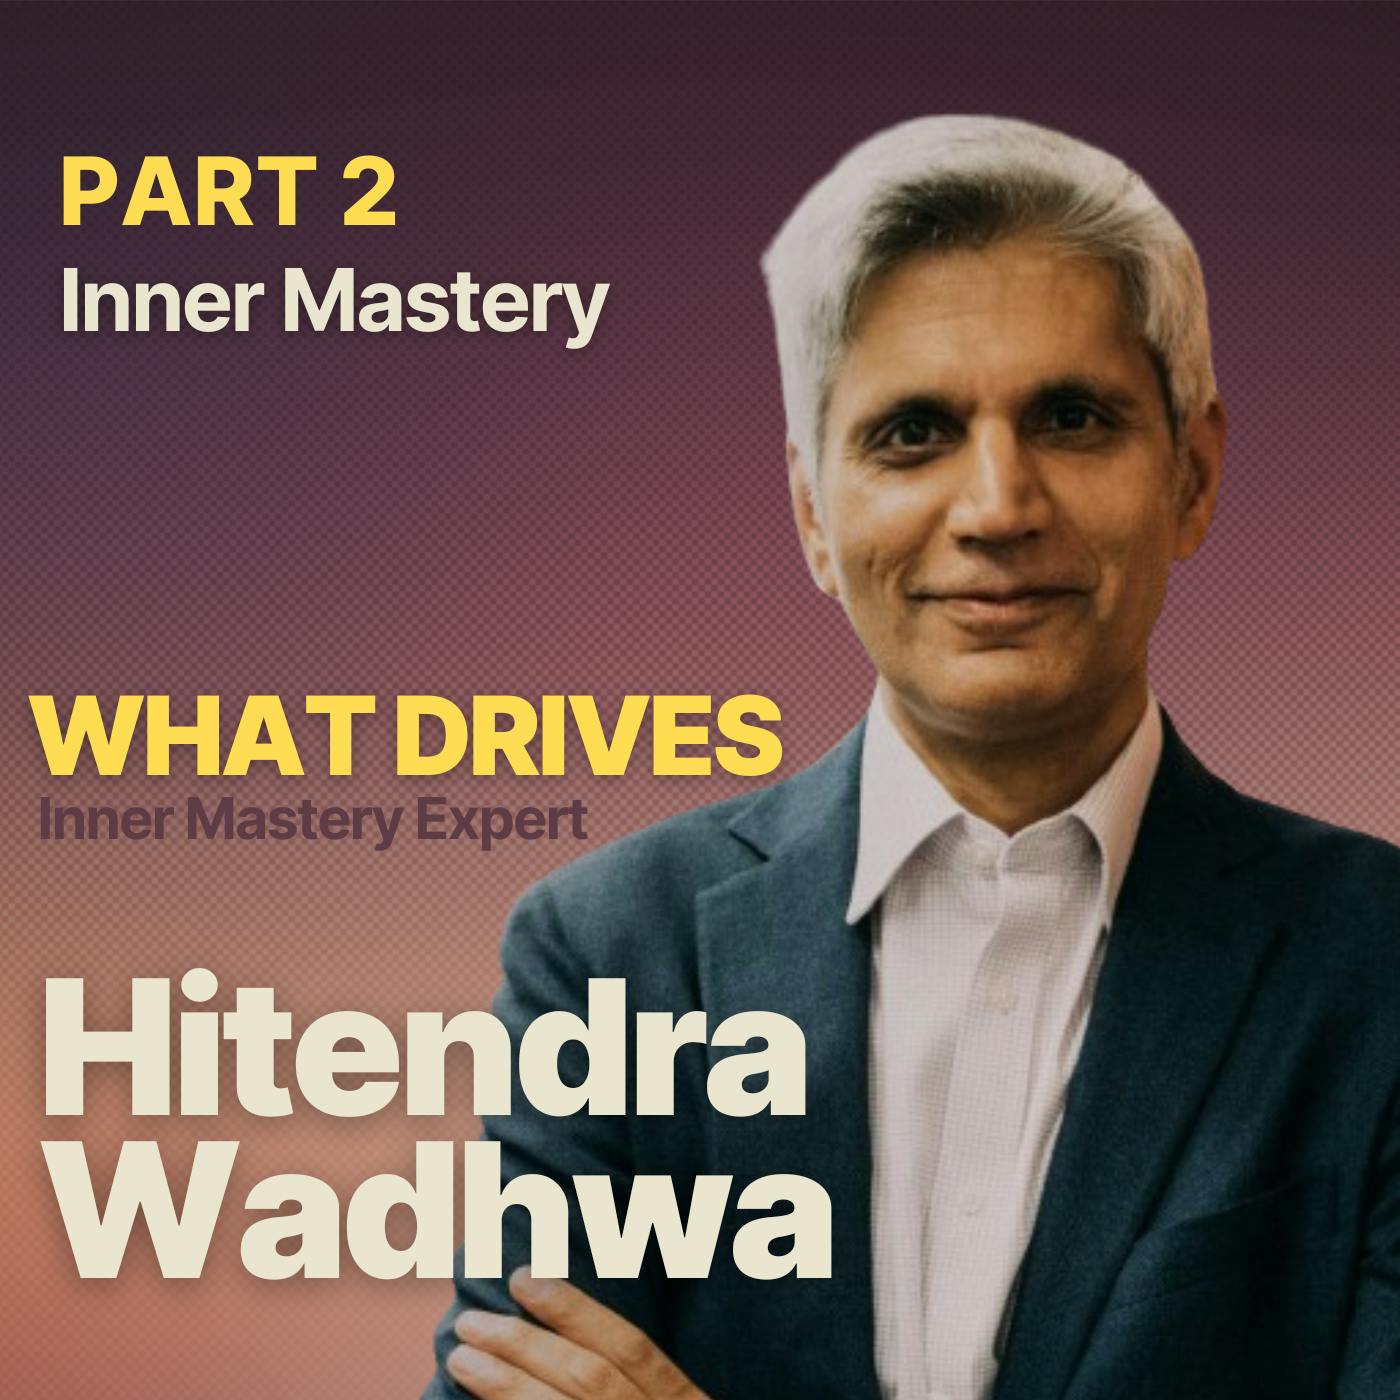 What Drives Inner Mastery Expert Hitendra Wadhwa